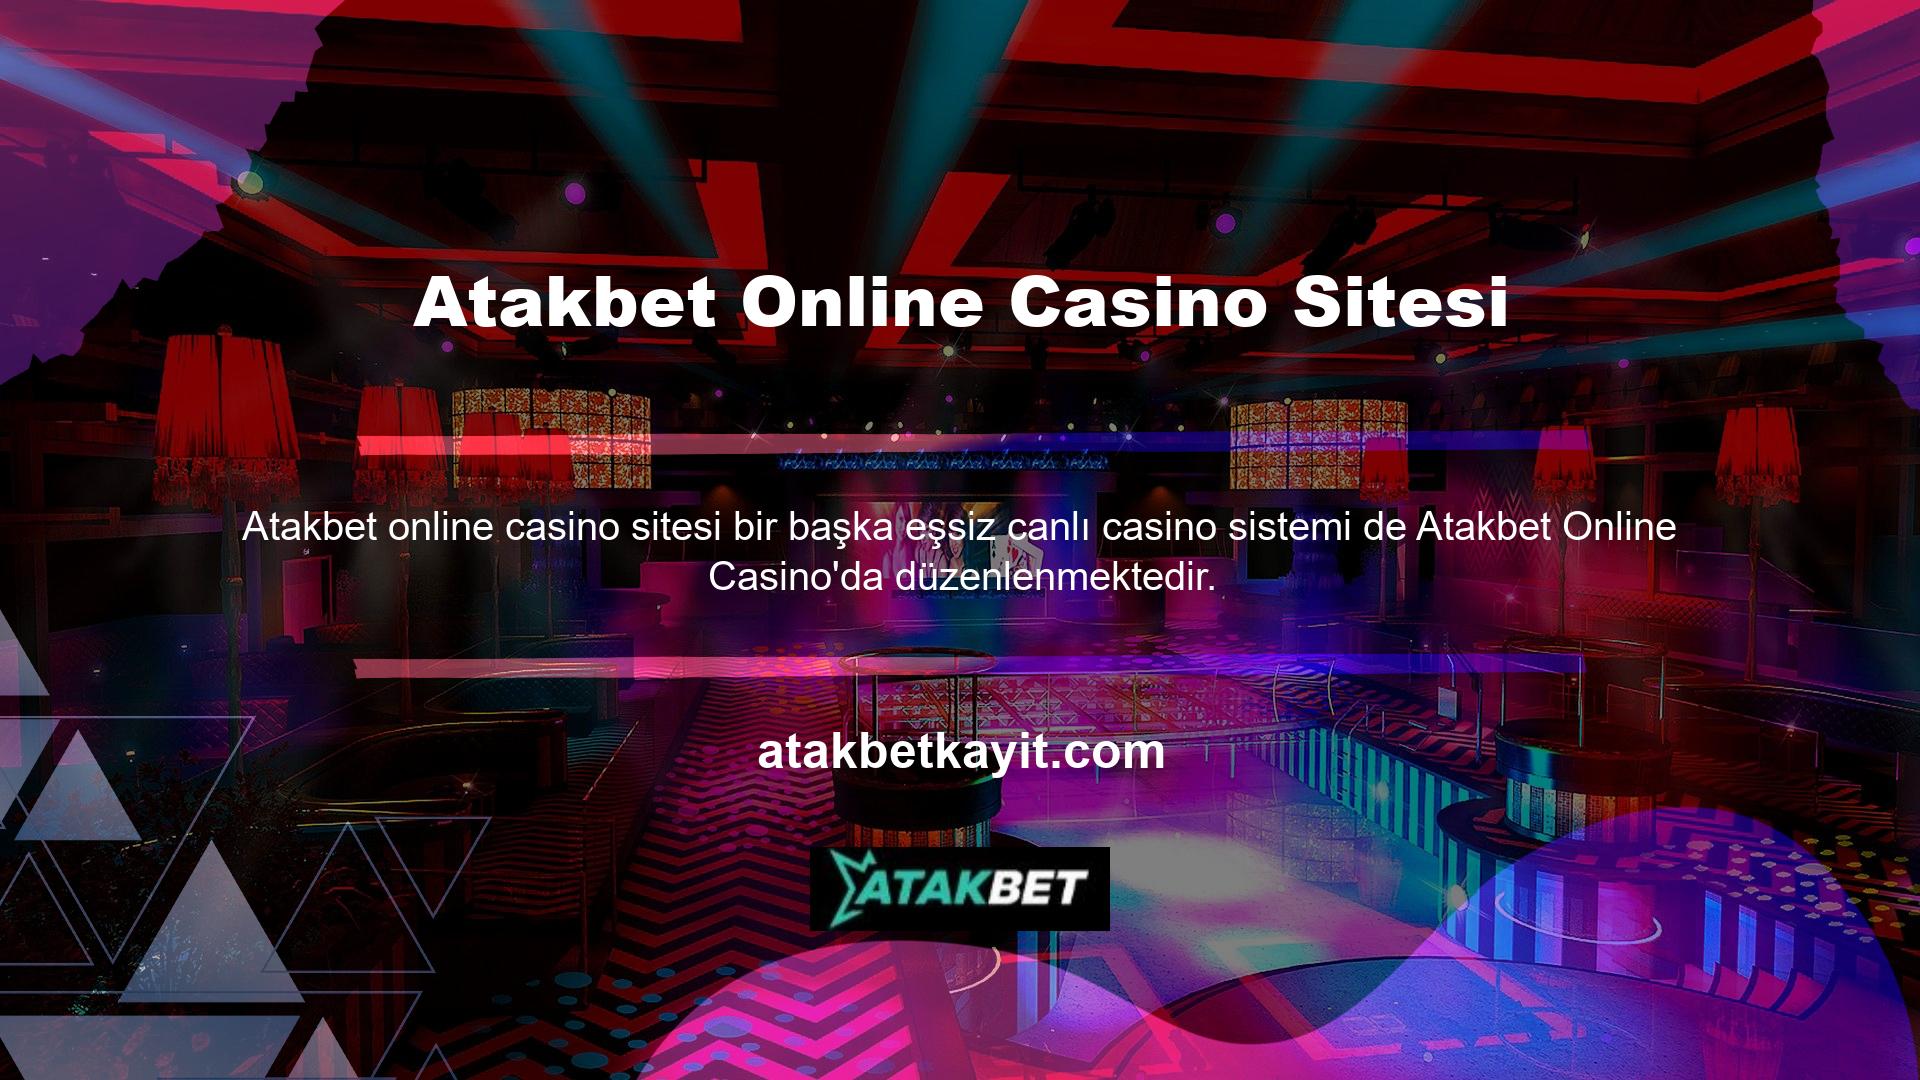 Gerçek çevrimiçi casinolar gerçeküstü nesneler, masalar ve oyunlar gibi değildir